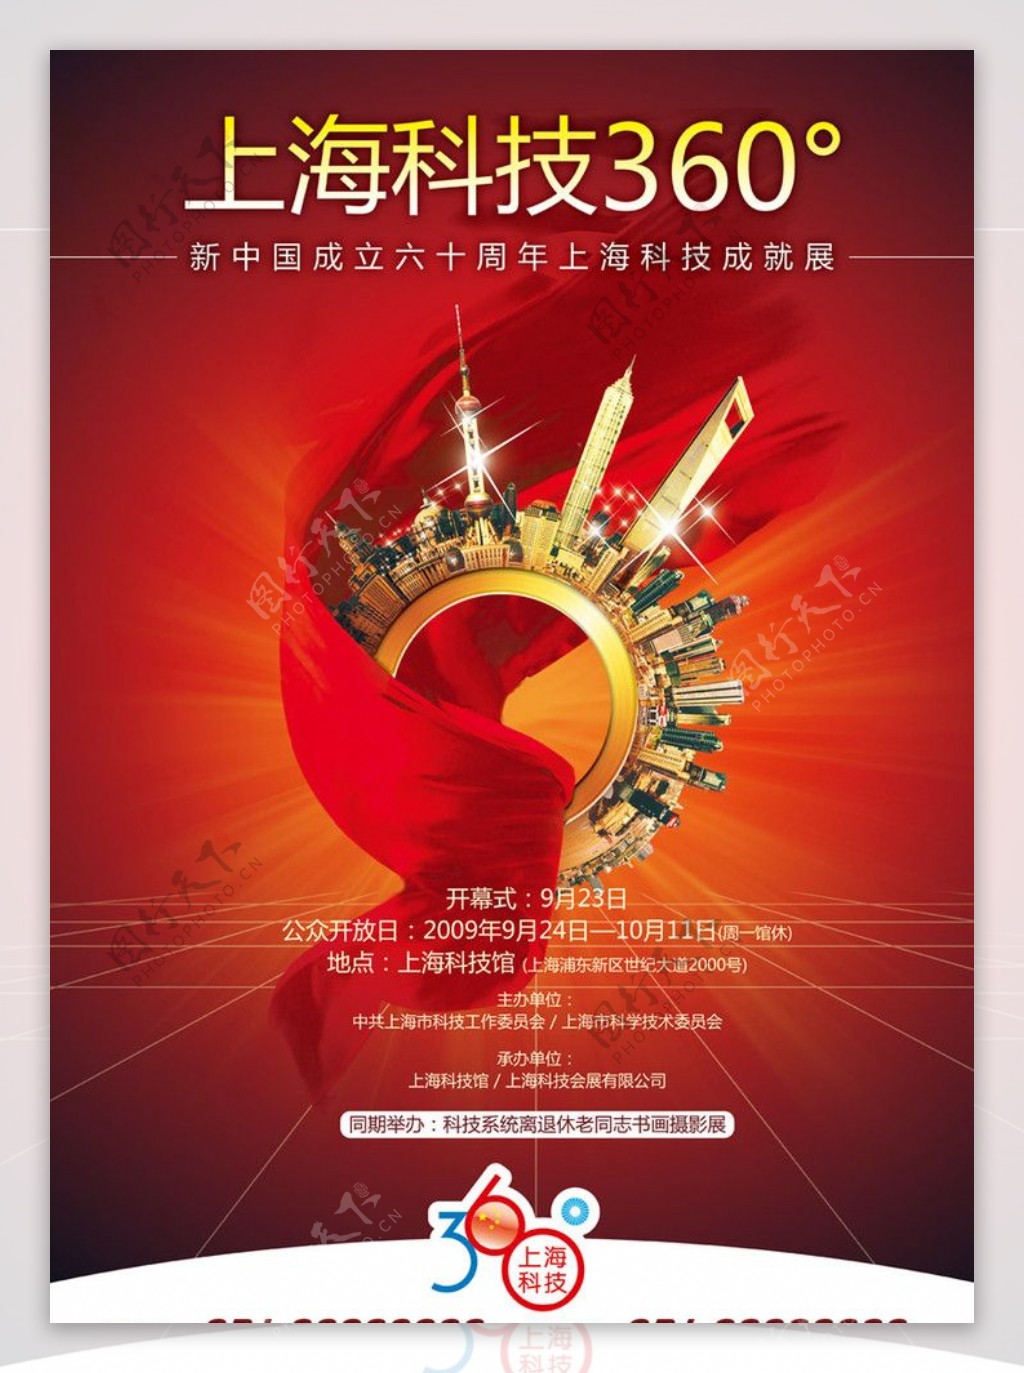 上海科技360